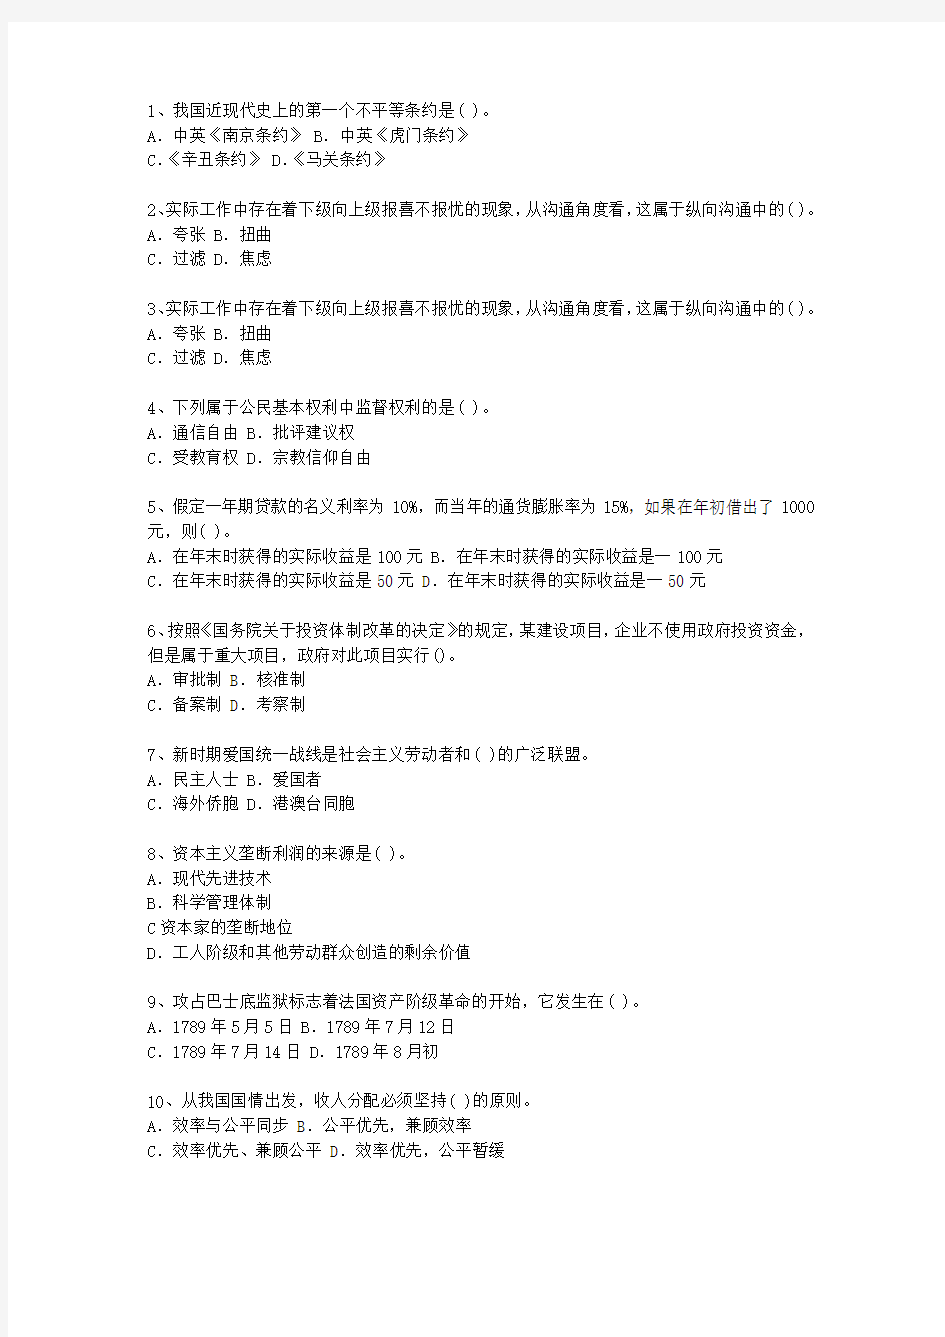 2015河北省最新公开选拔镇副科级领导干部考试答题技巧